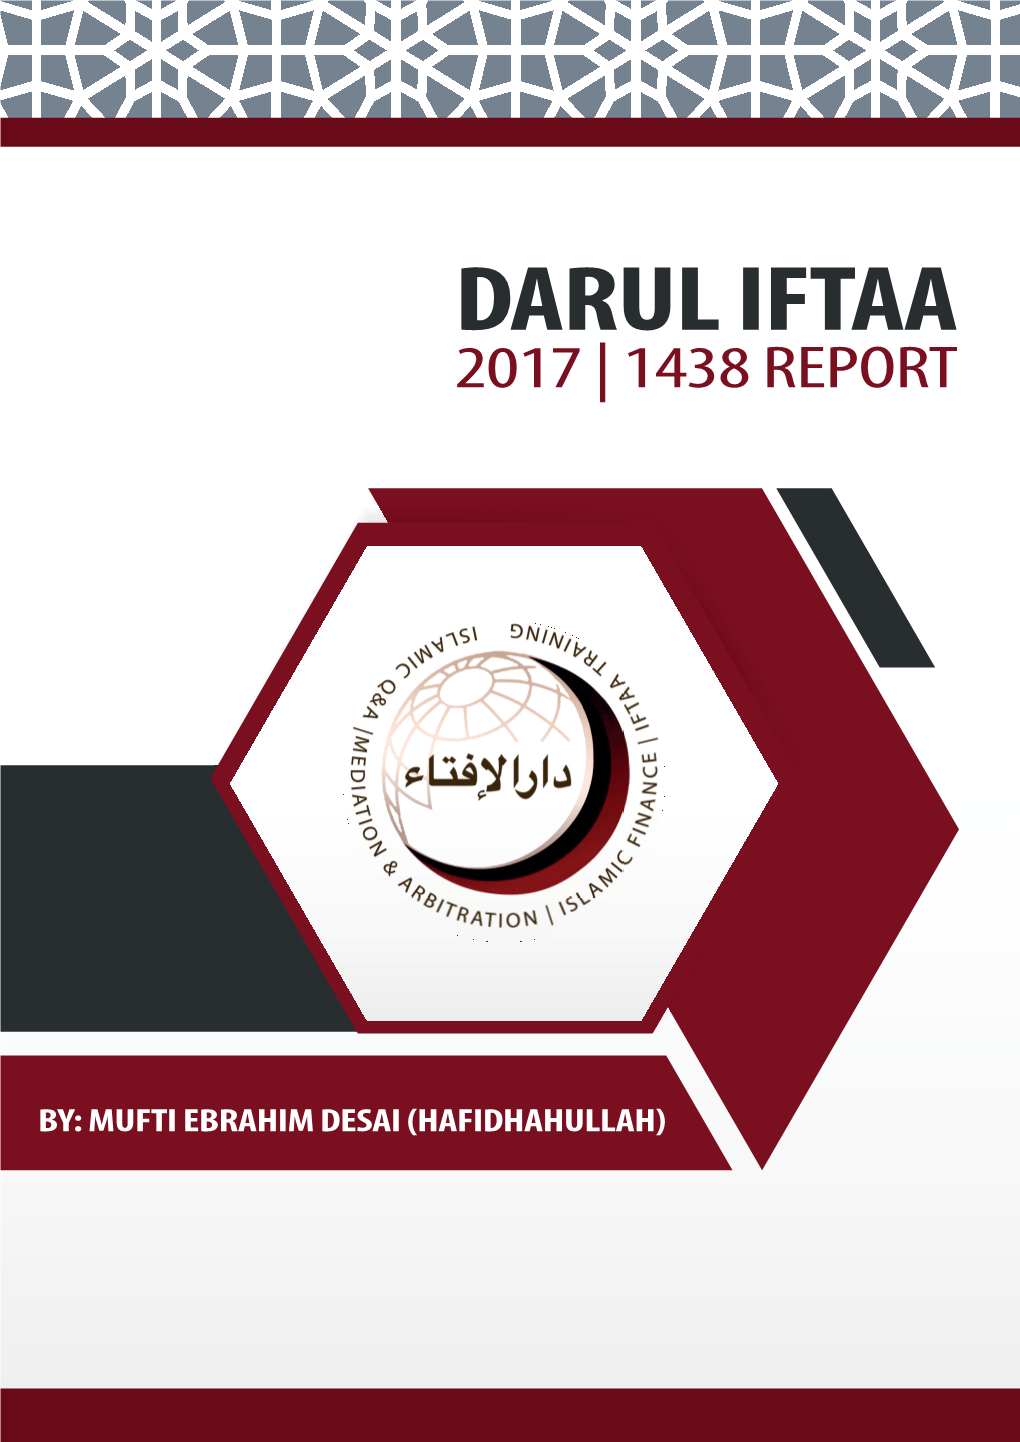 The Darul Iftaa Report 2017